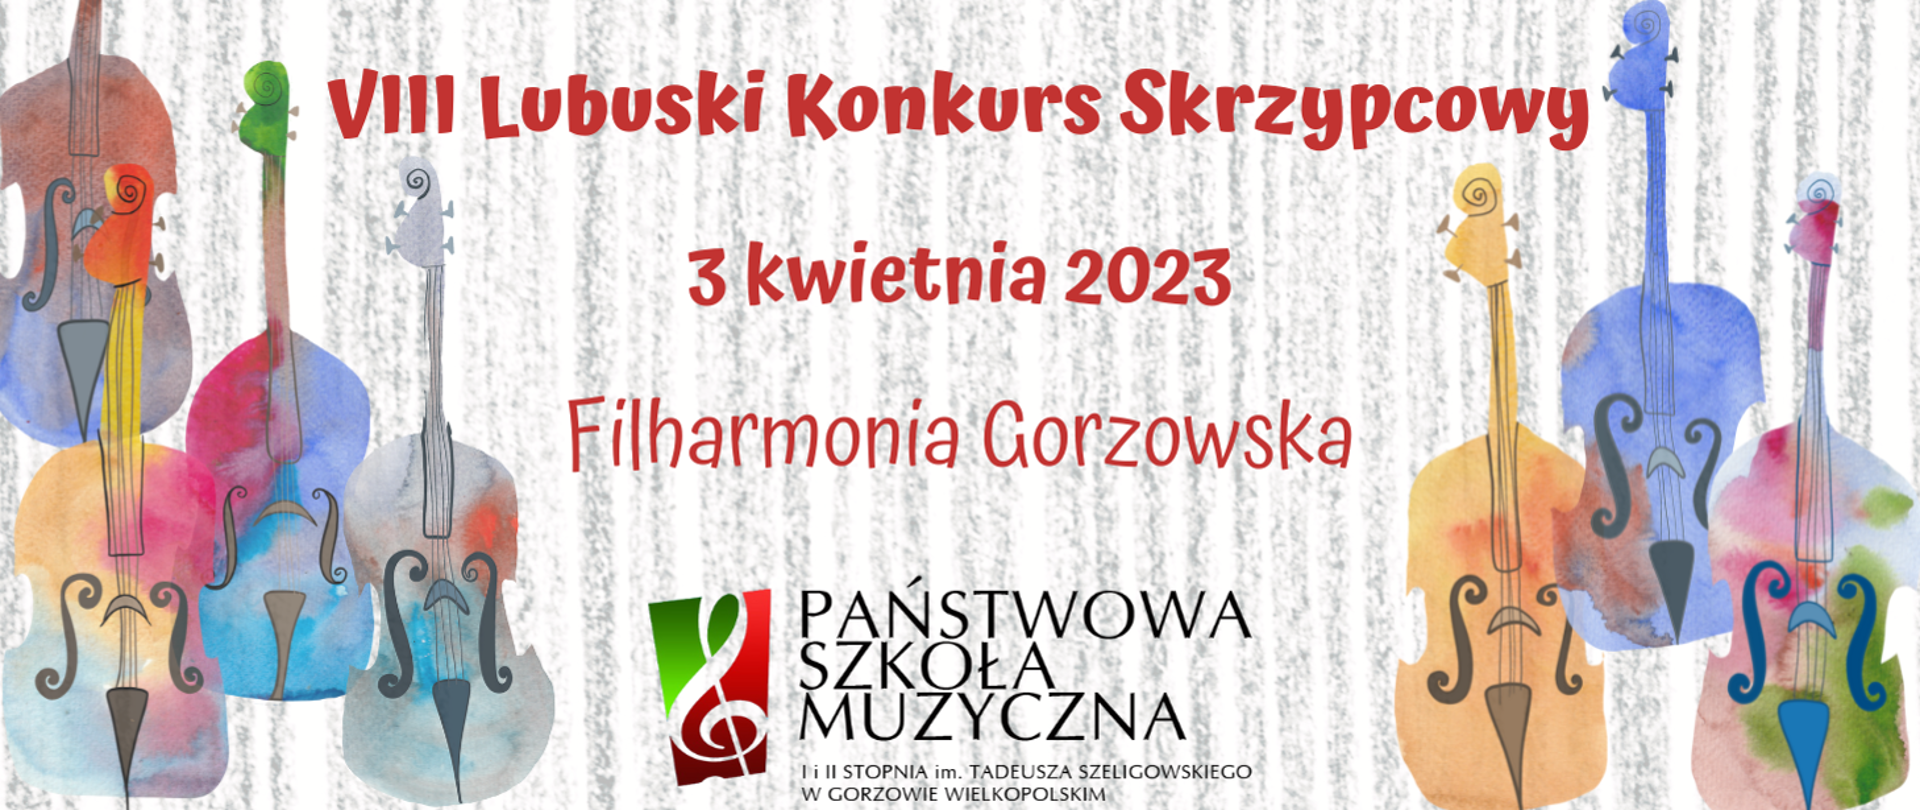 Plakat VIII Lubuskiego Konkursu Skrzypcowego w Gorzowie Wielkopolskim na szarym tle widnieja skrzypce róznego koloru